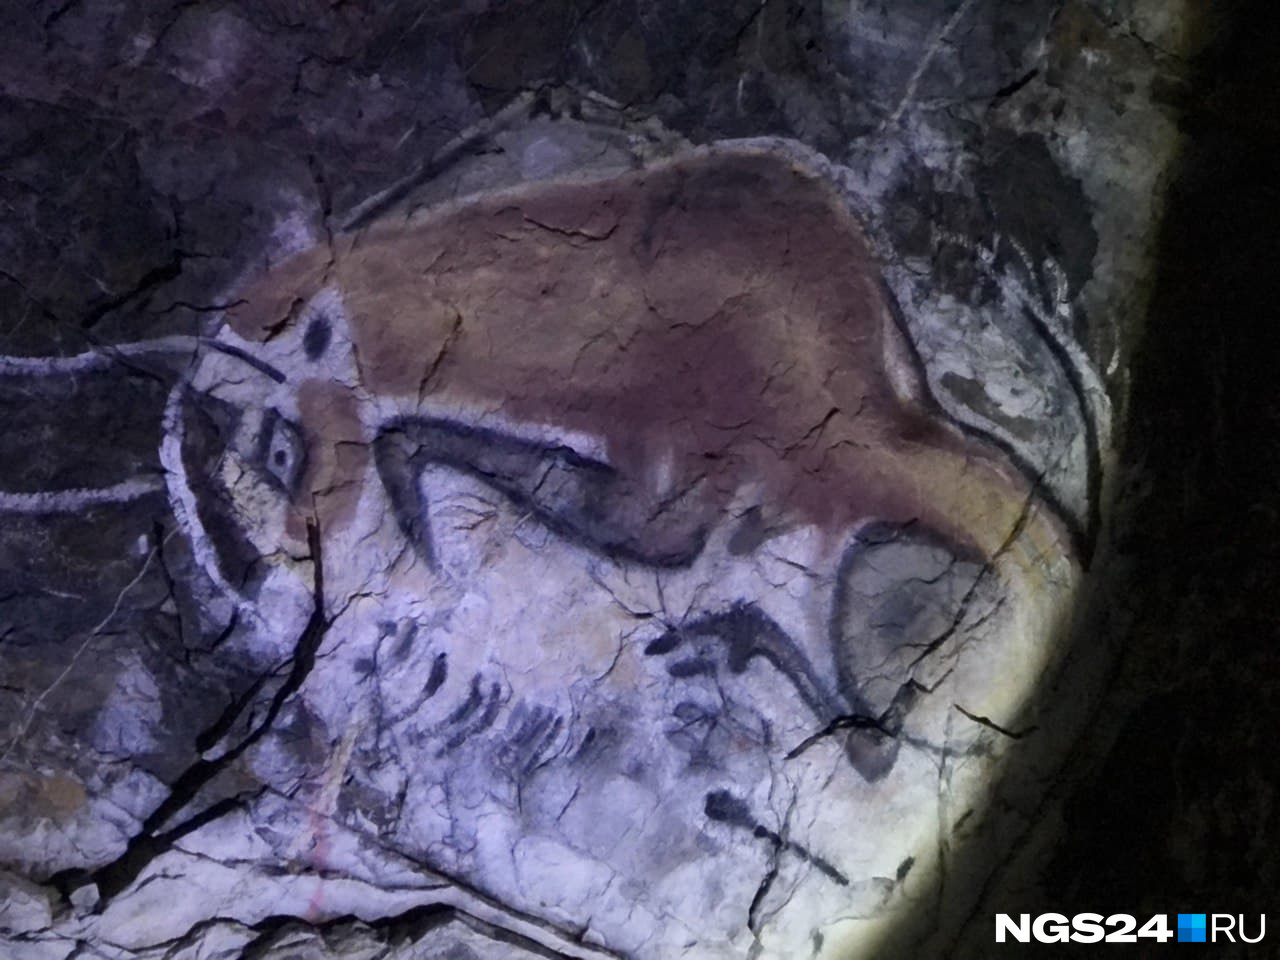 На входе в пещеру нас встречают современные граффити: аналоги первых рисунков стада бизонов в пещере Альтамира в Испании